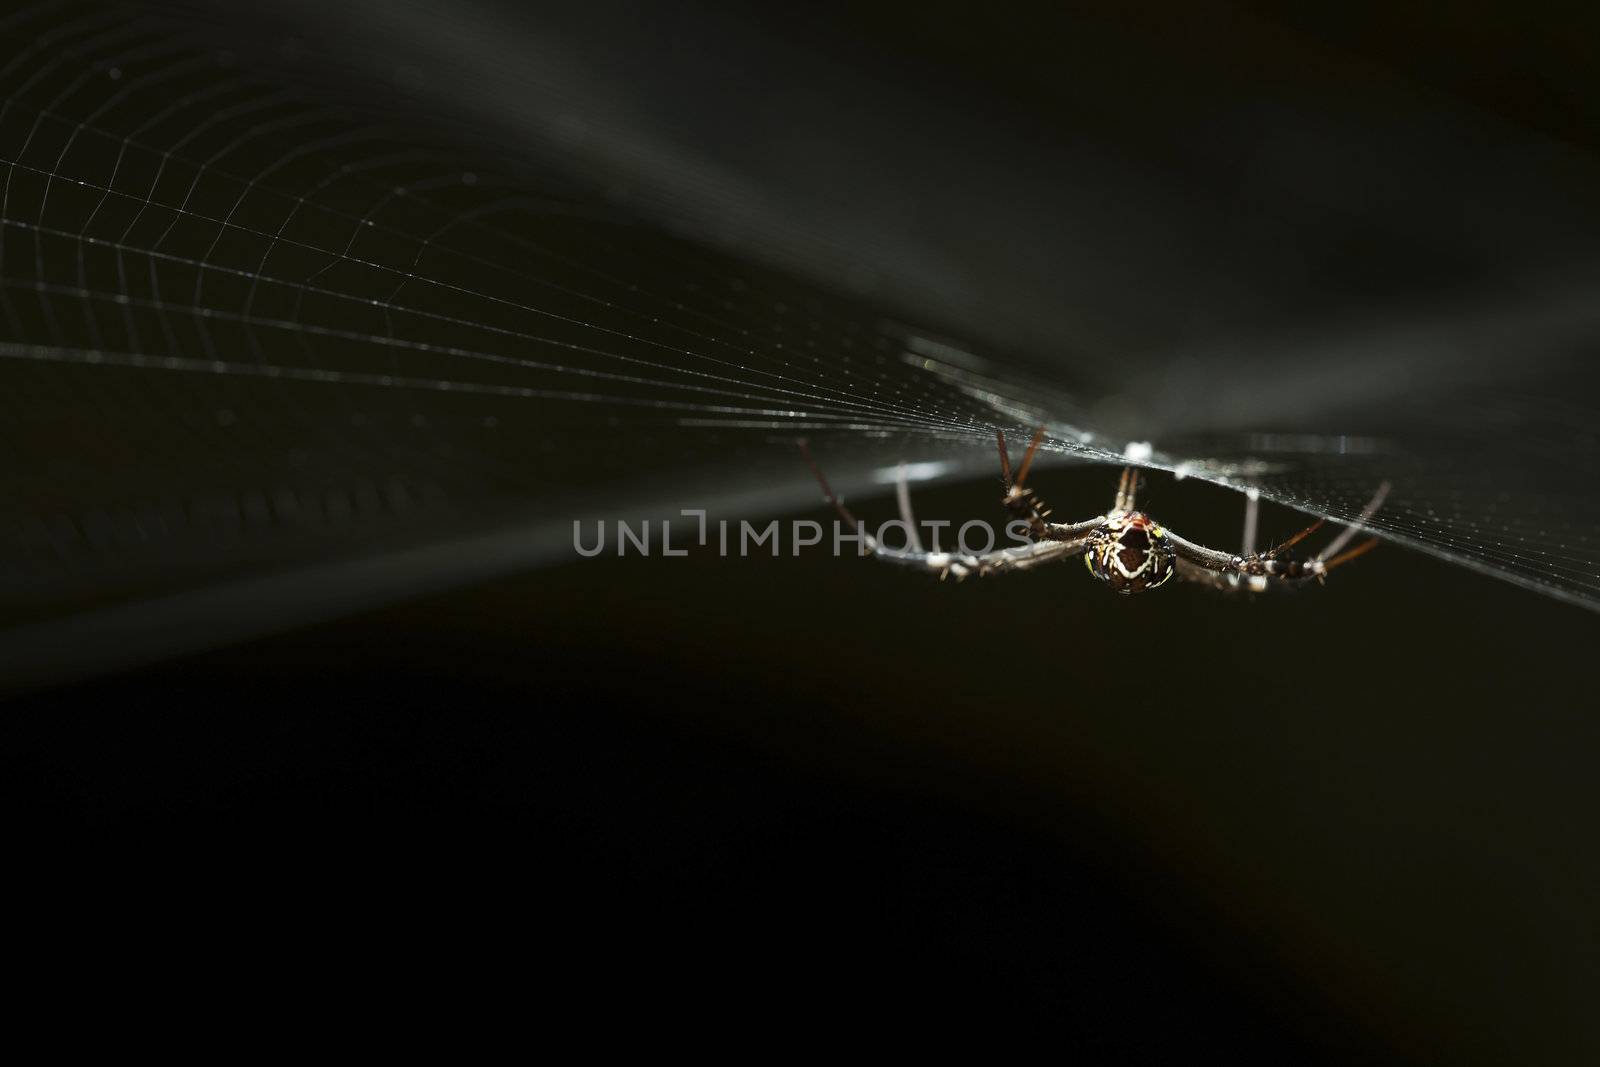 Garden spider on a web